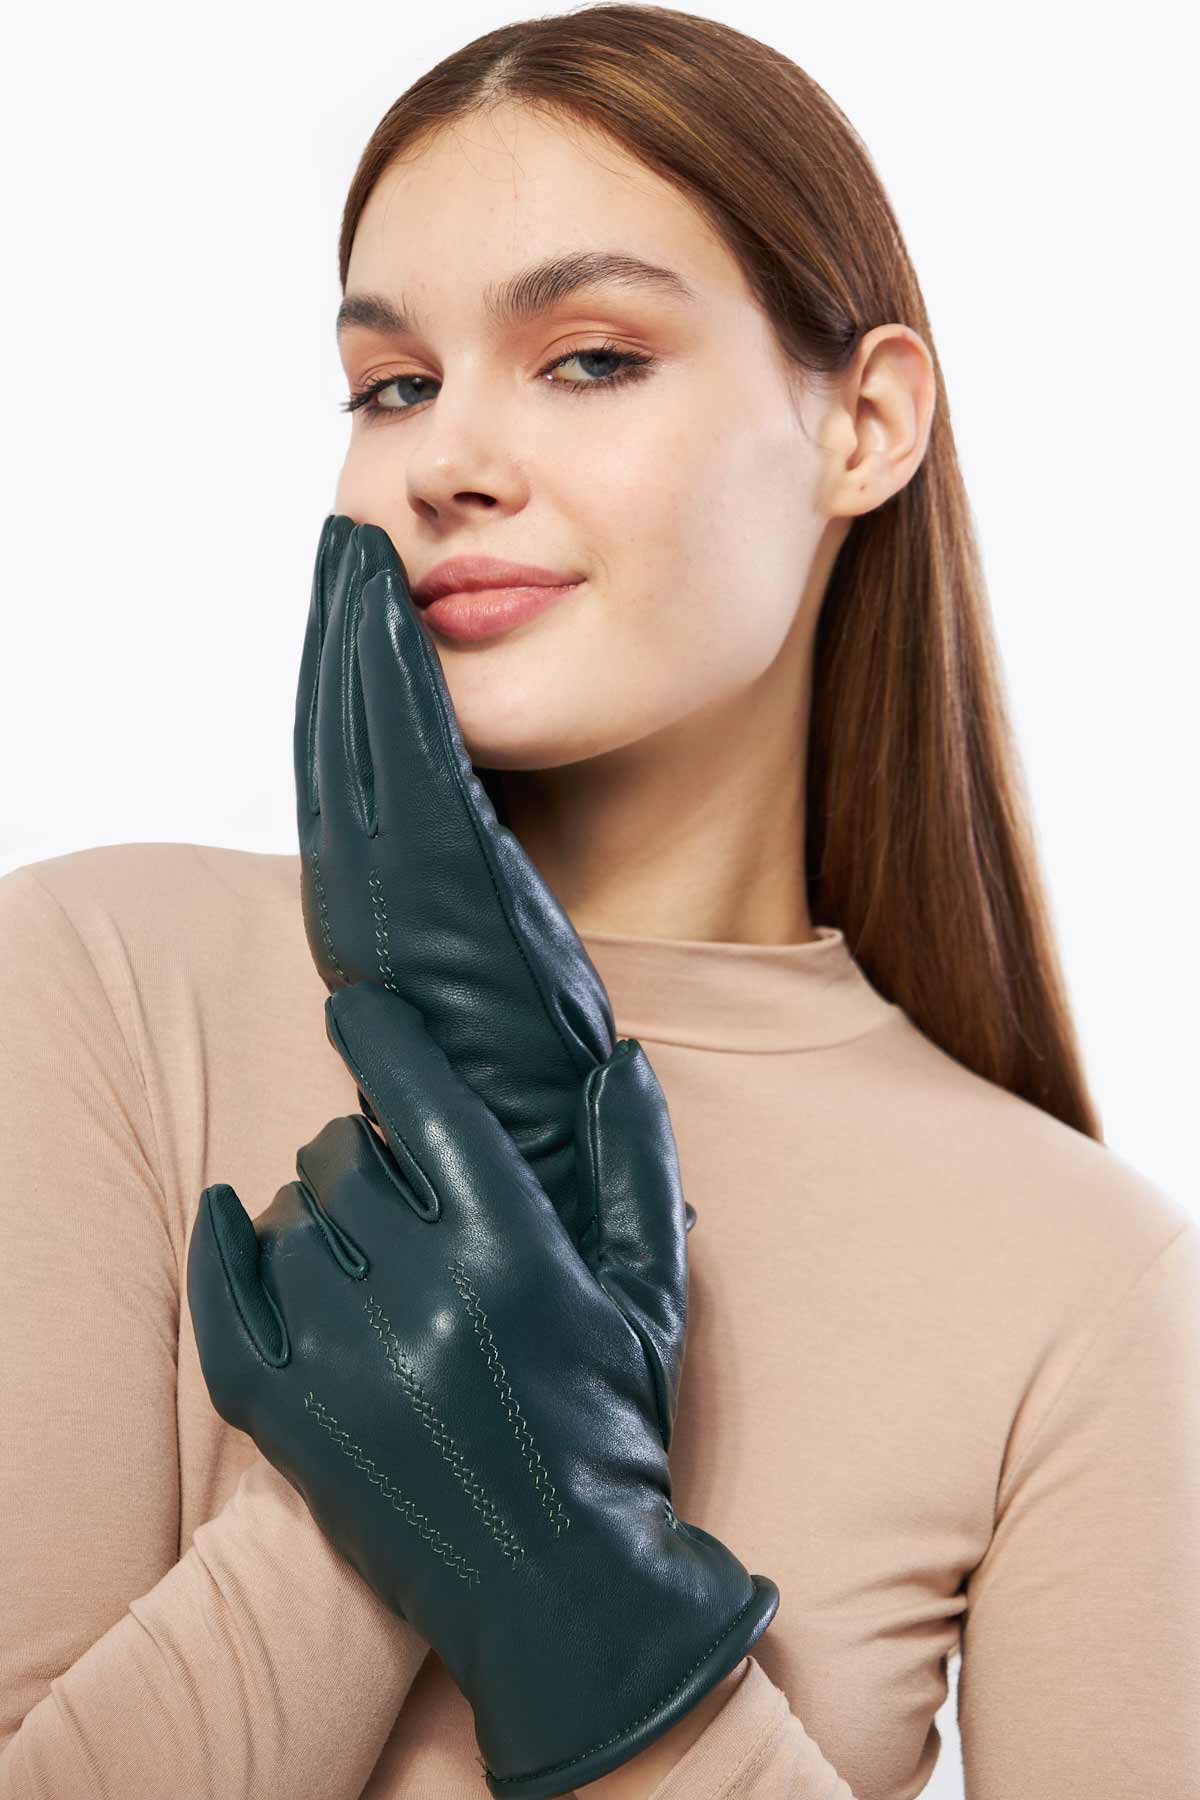 Pegia Vena Sheepskin Unisex Gloves